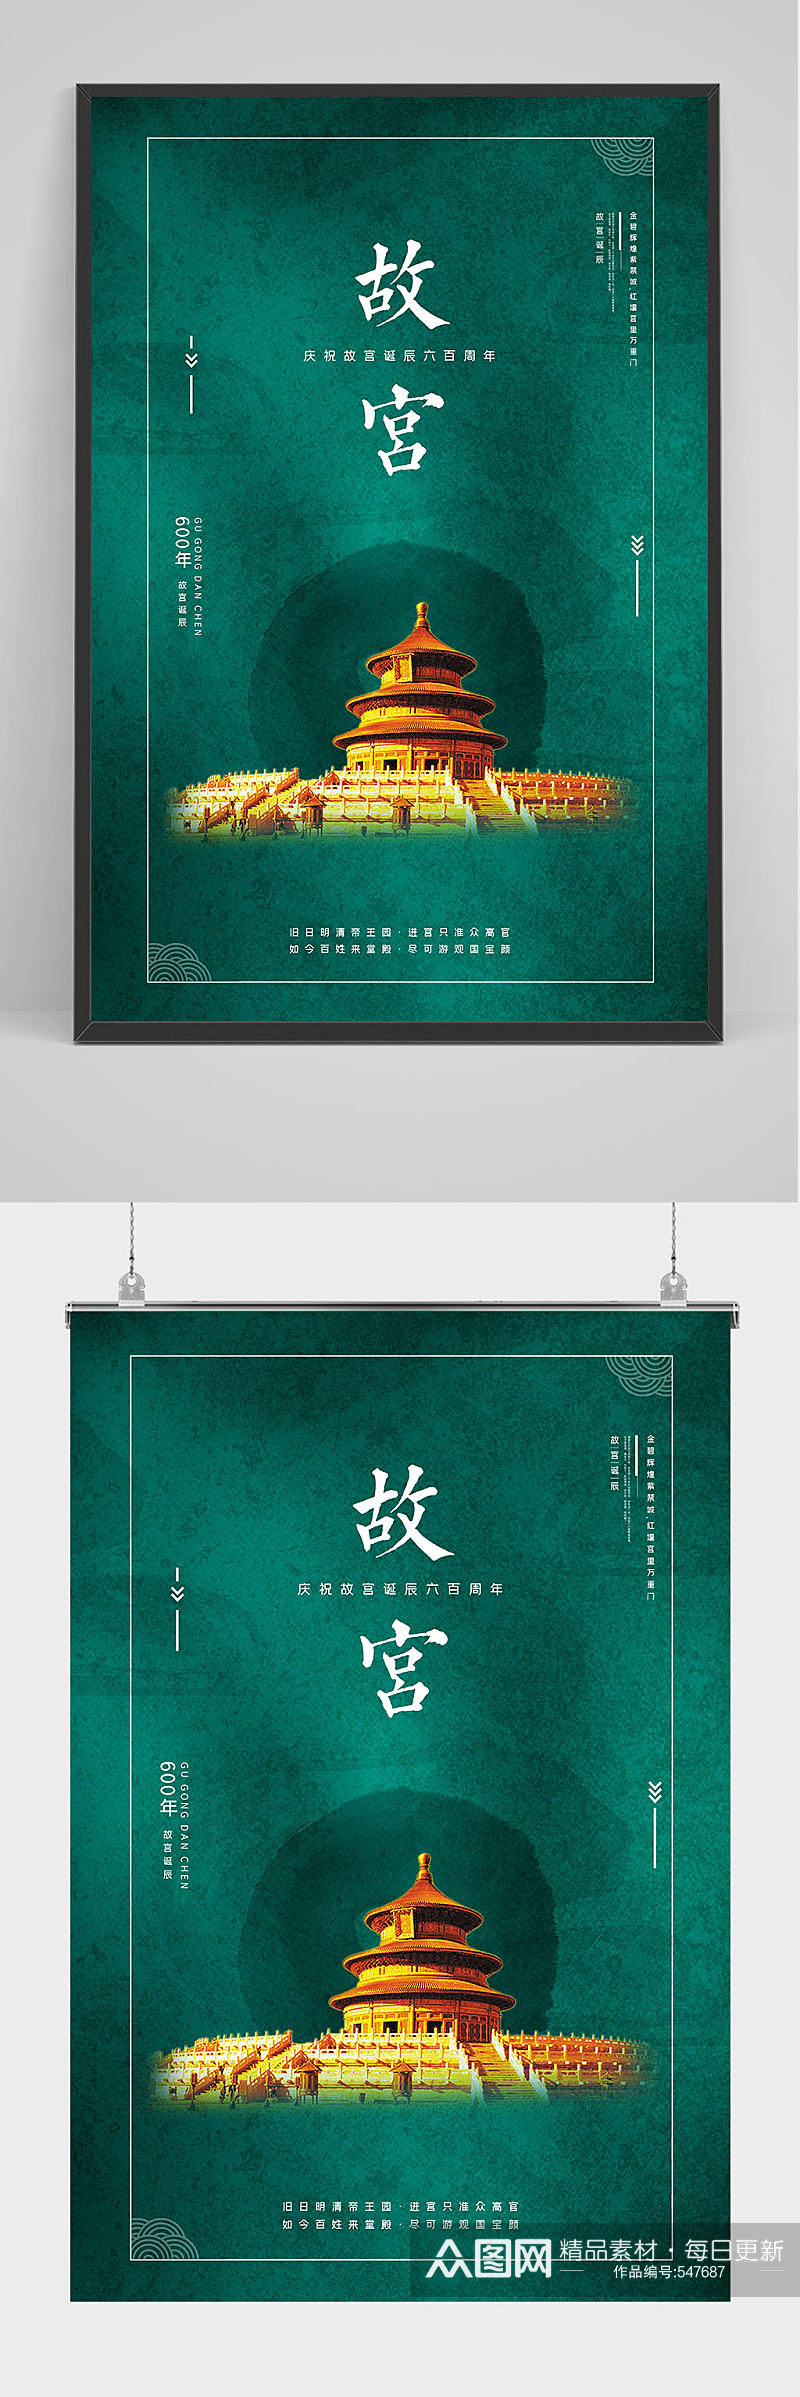 北京故宫旅游海报设计素材